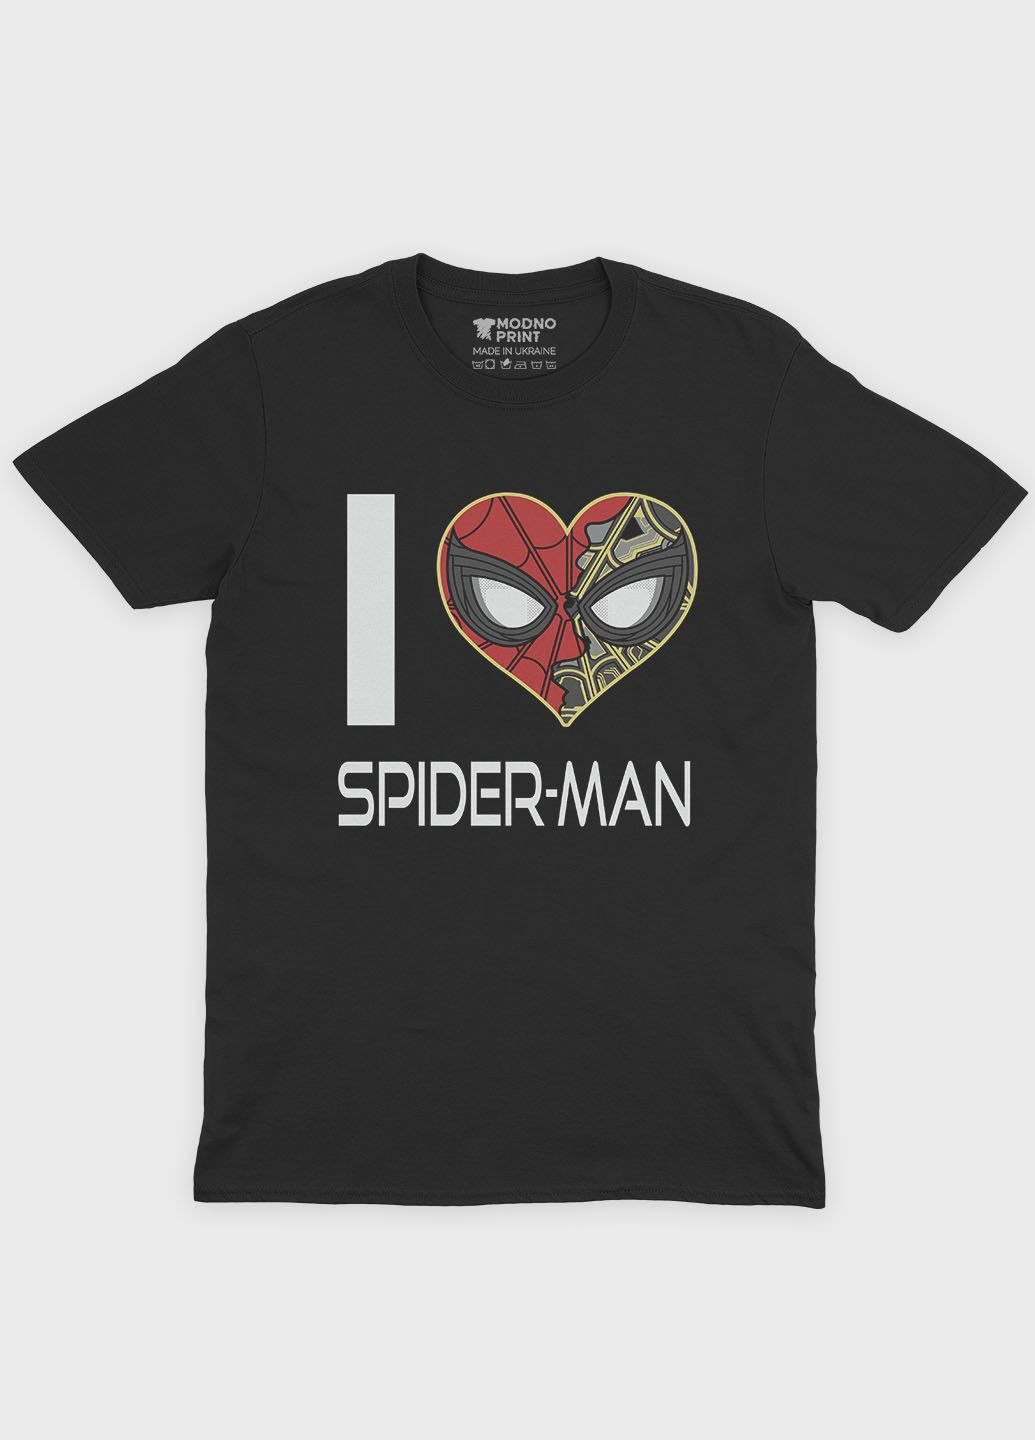 Чорна демісезонна футболка для хлопчика з принтом супергероя - людина-павук (ts001-1-bl-006-014-091-b) Modno